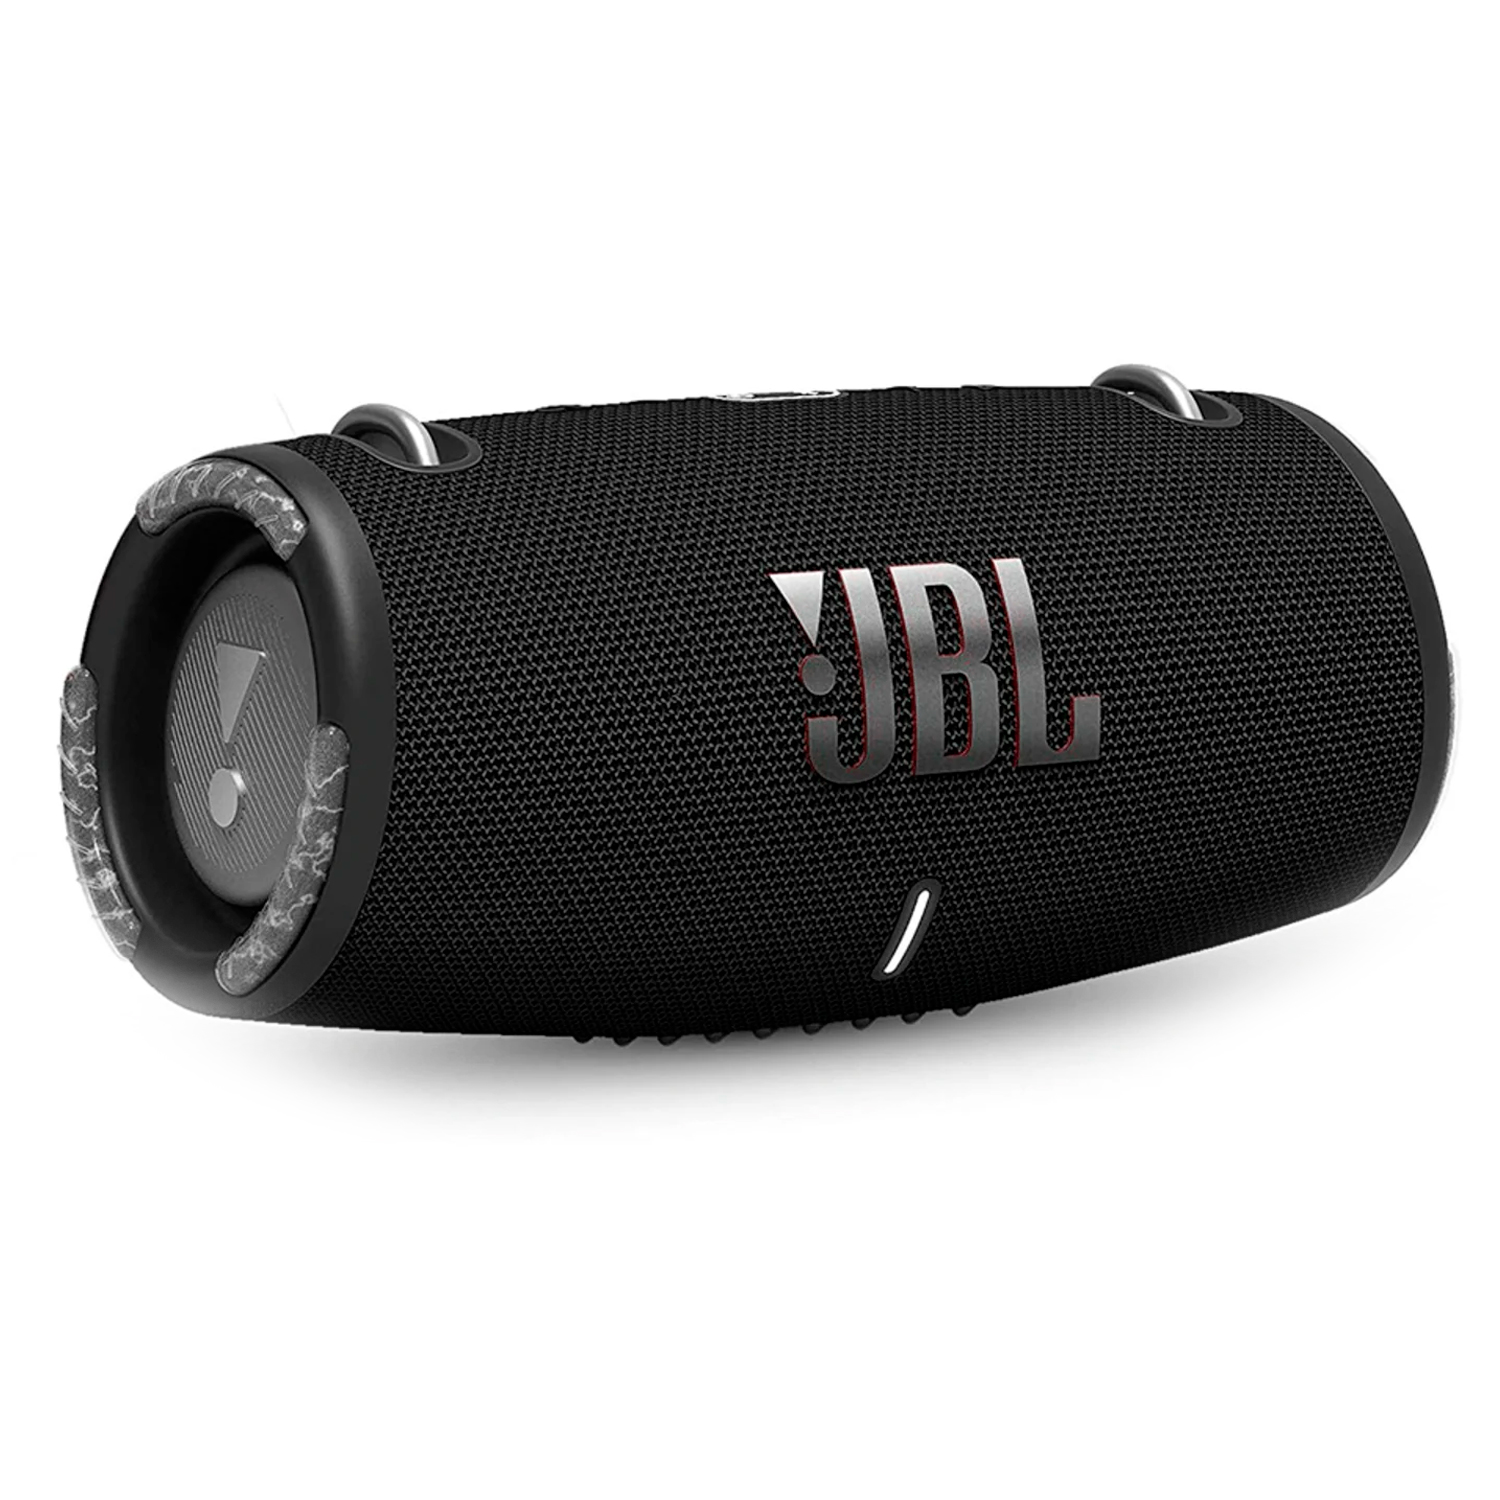 Caixa de Som JBL Xtreme 3 - Preto